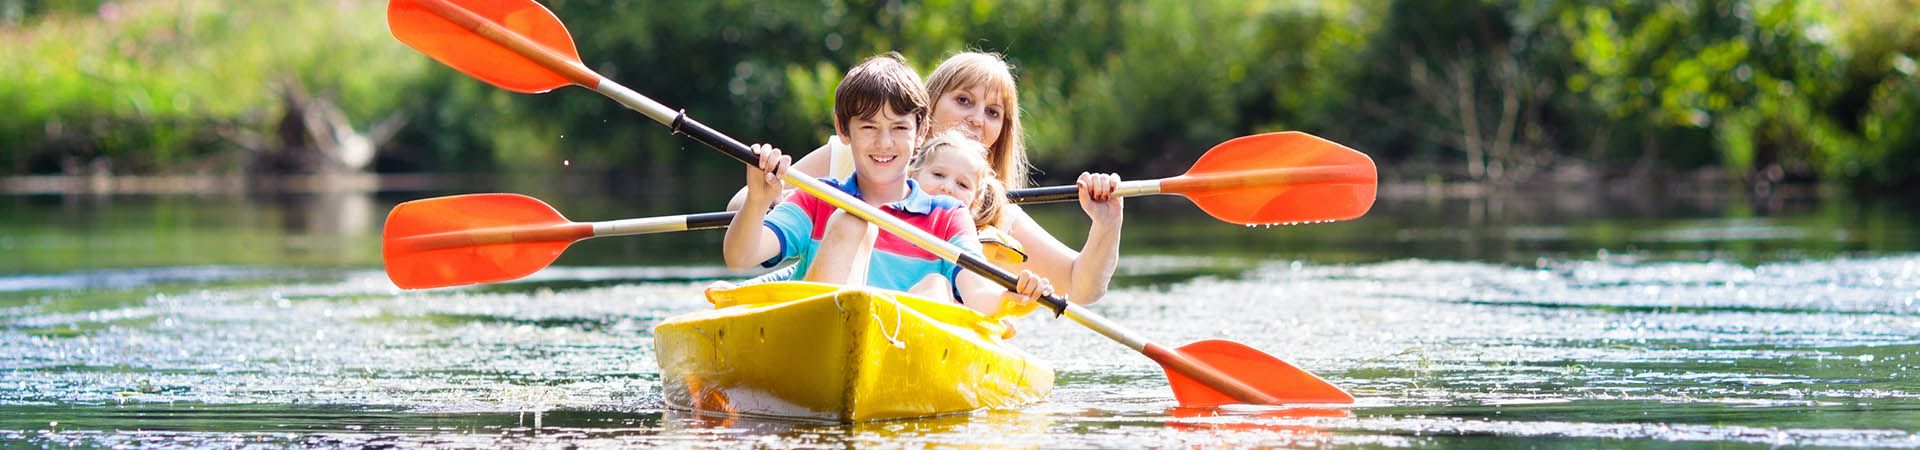 Sortie en famille : des enfants et leurs parents font une excursion d’une journée en kayak.